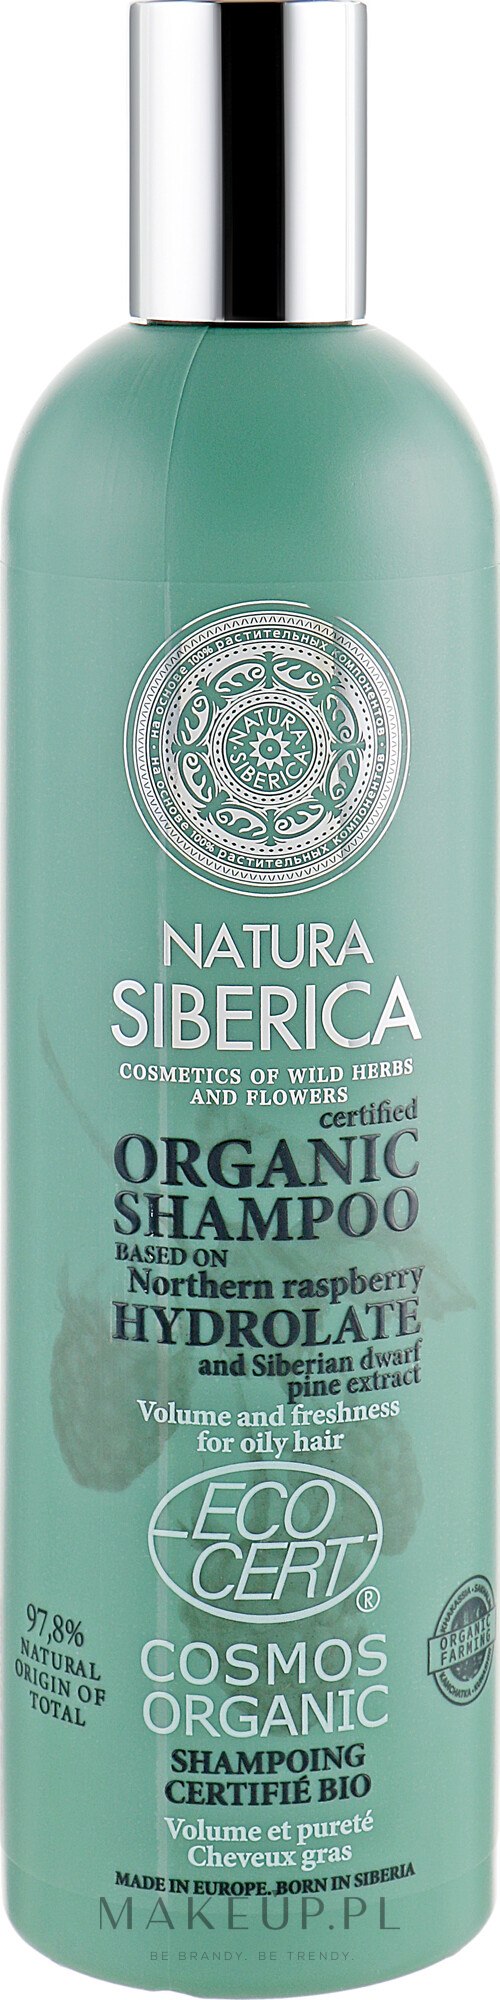 natura siberica wild siberica szampon nawilżający opinie